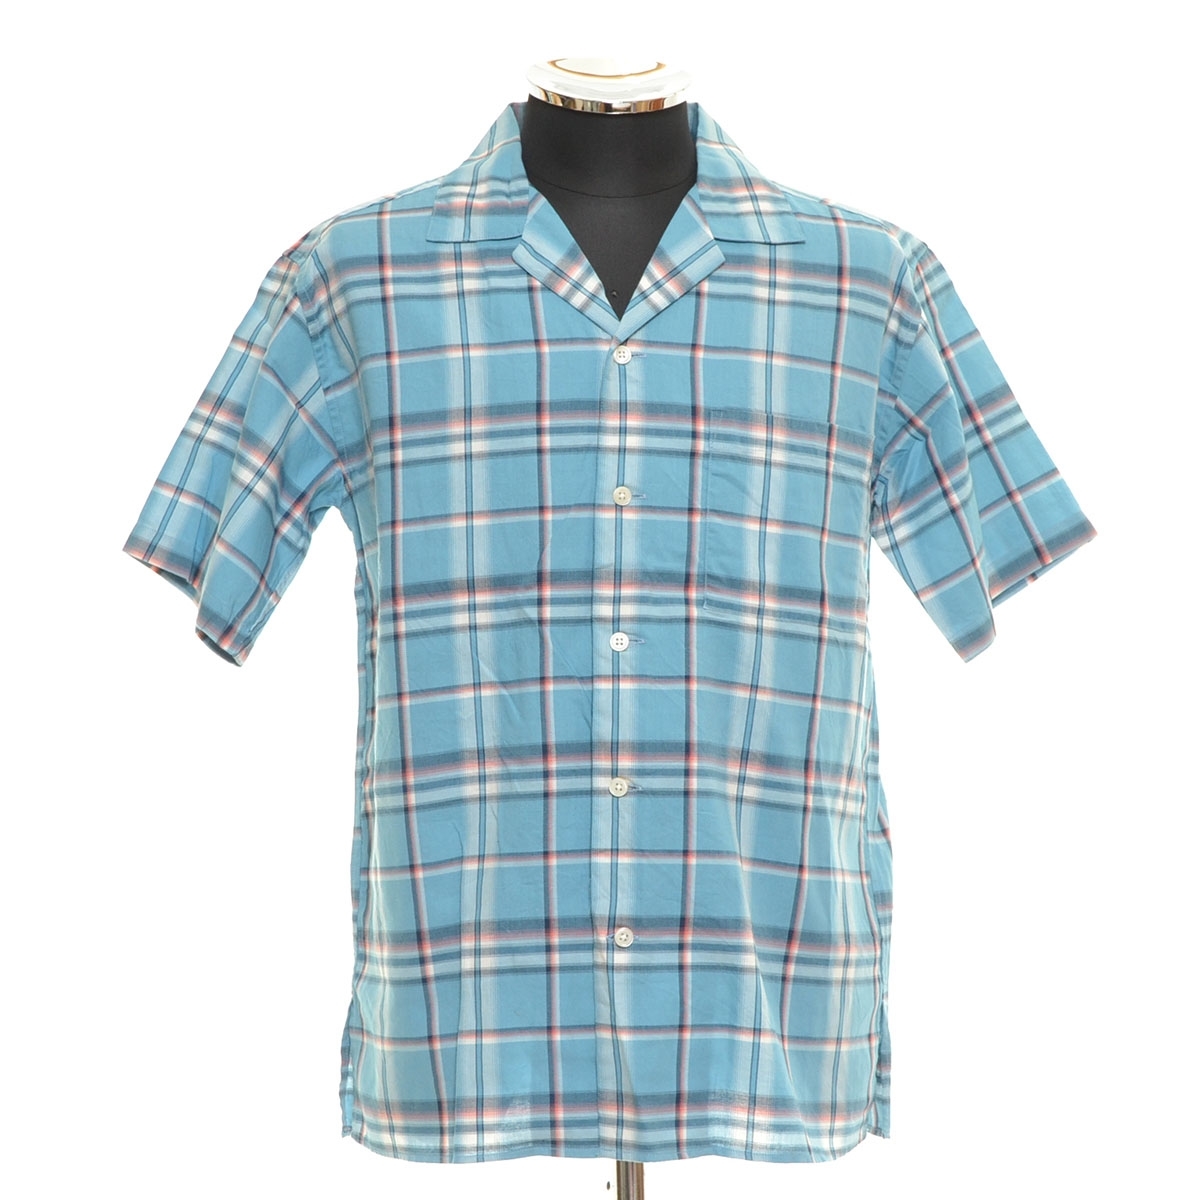 0409910 [ сверхнизкая цена ] не использовался AMERICAN RAG CIE American Rag Cie * открытый цвет рубашка короткий рукав размер 1 хлопок 100% мужской сделано в Японии голубой 